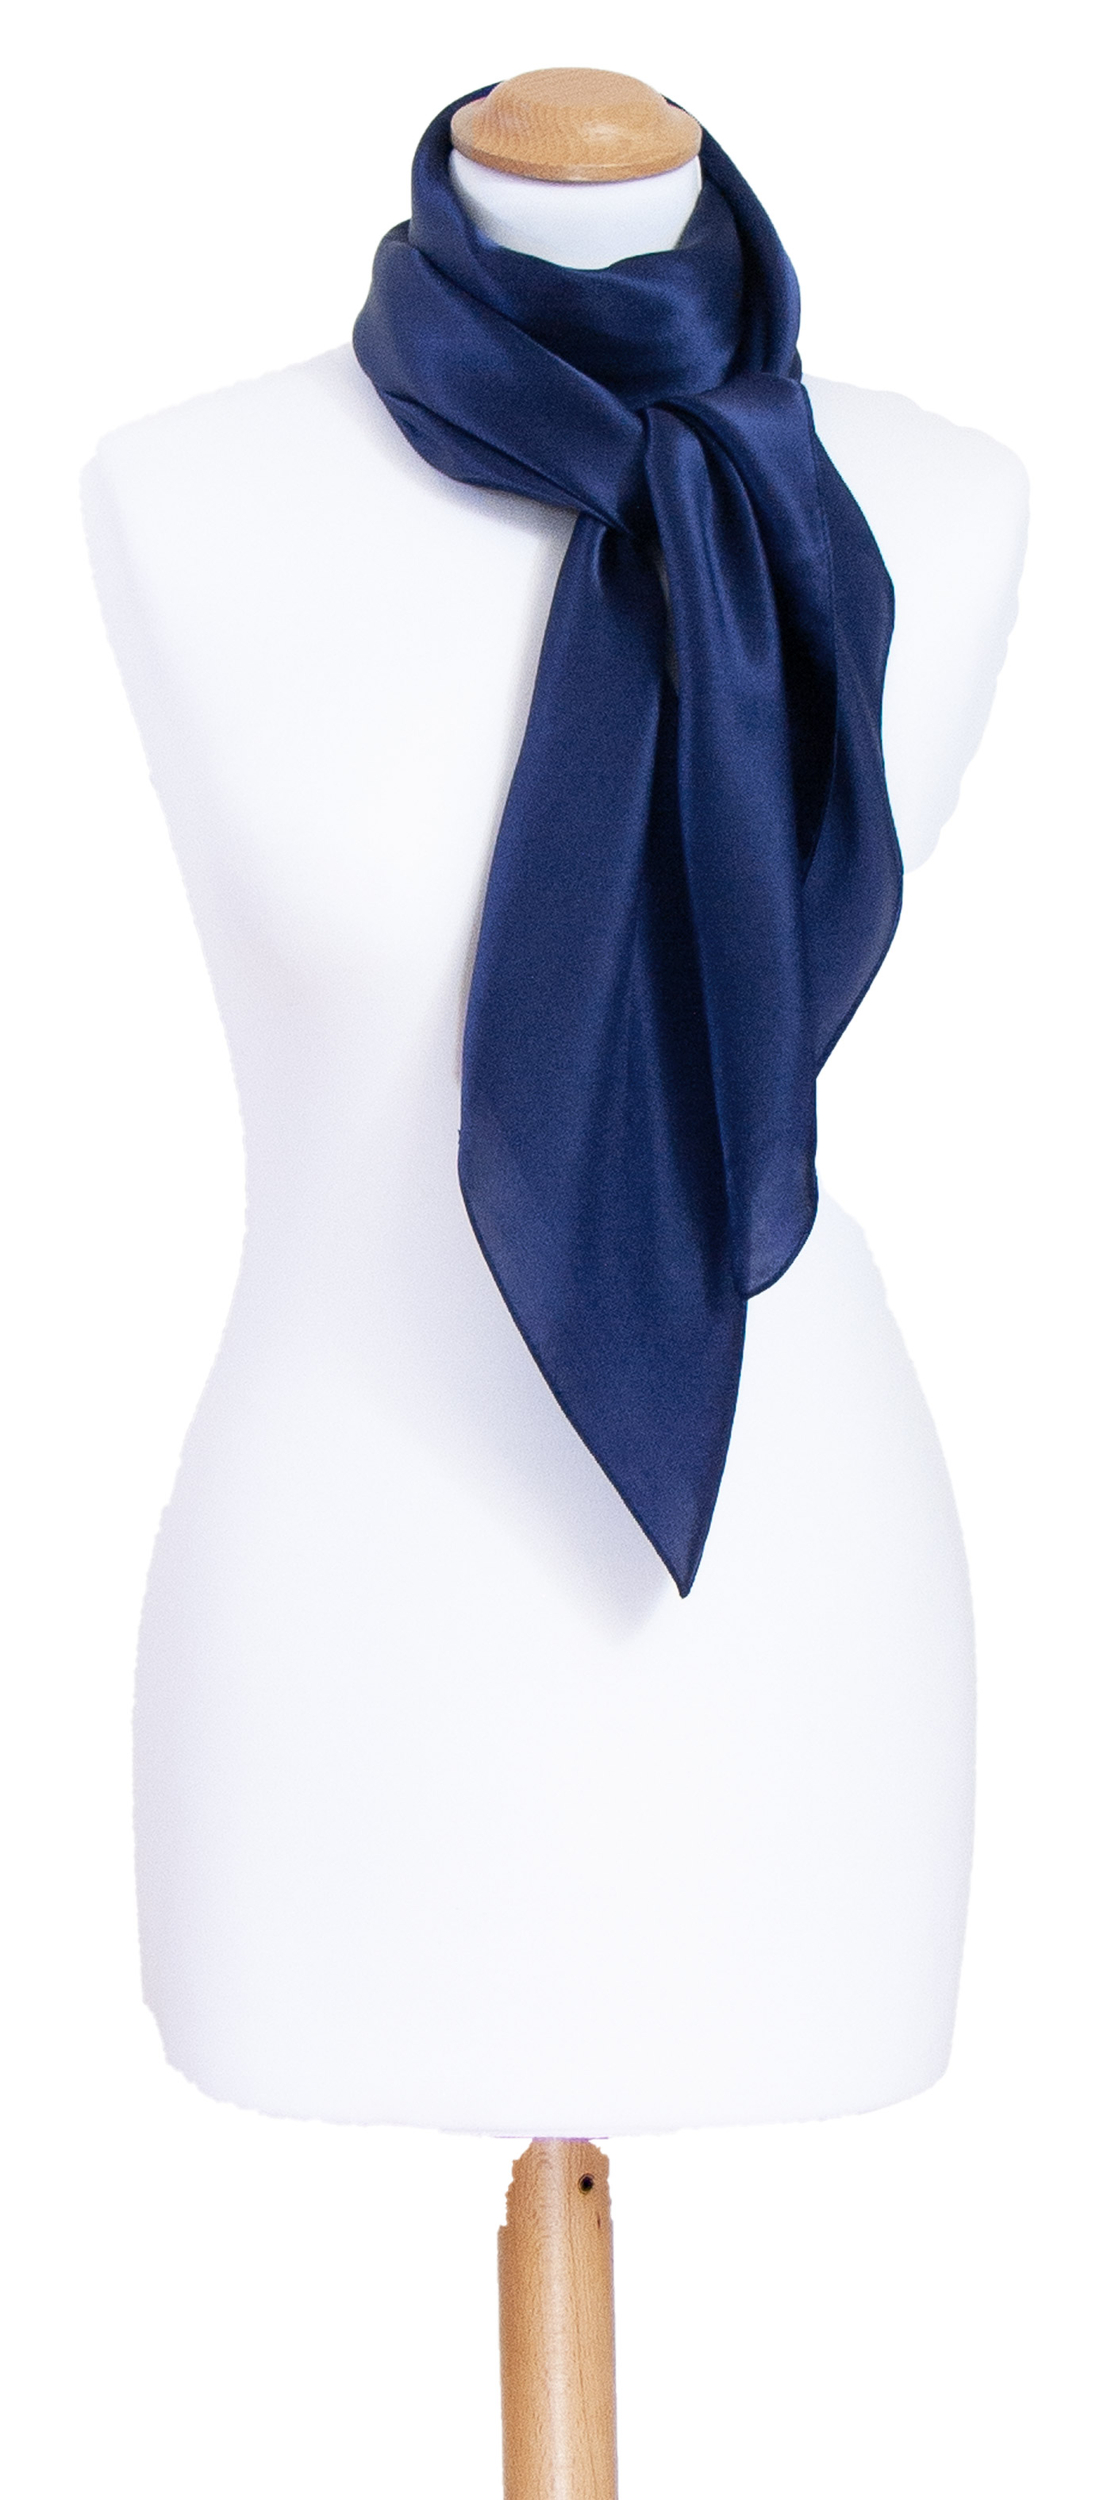 Foulard carré en soie bleu marine uni 110 cm